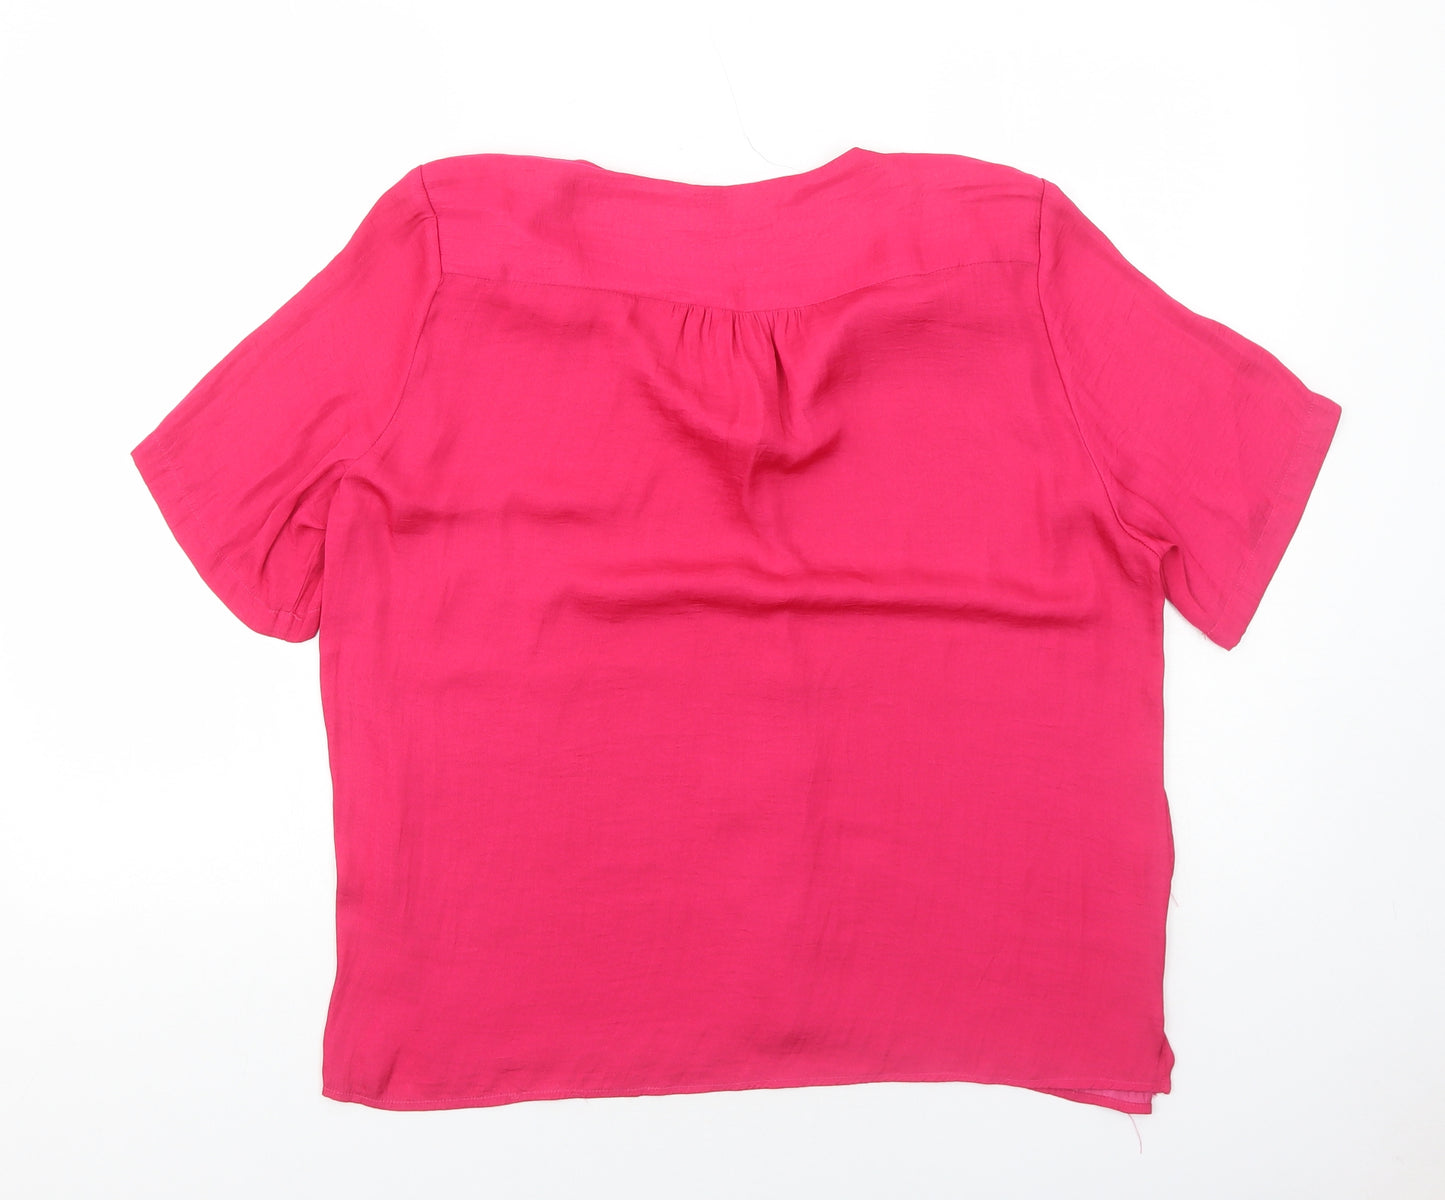 Sfera Womens Pink Polyester Basic Blouse Size L V-Neck